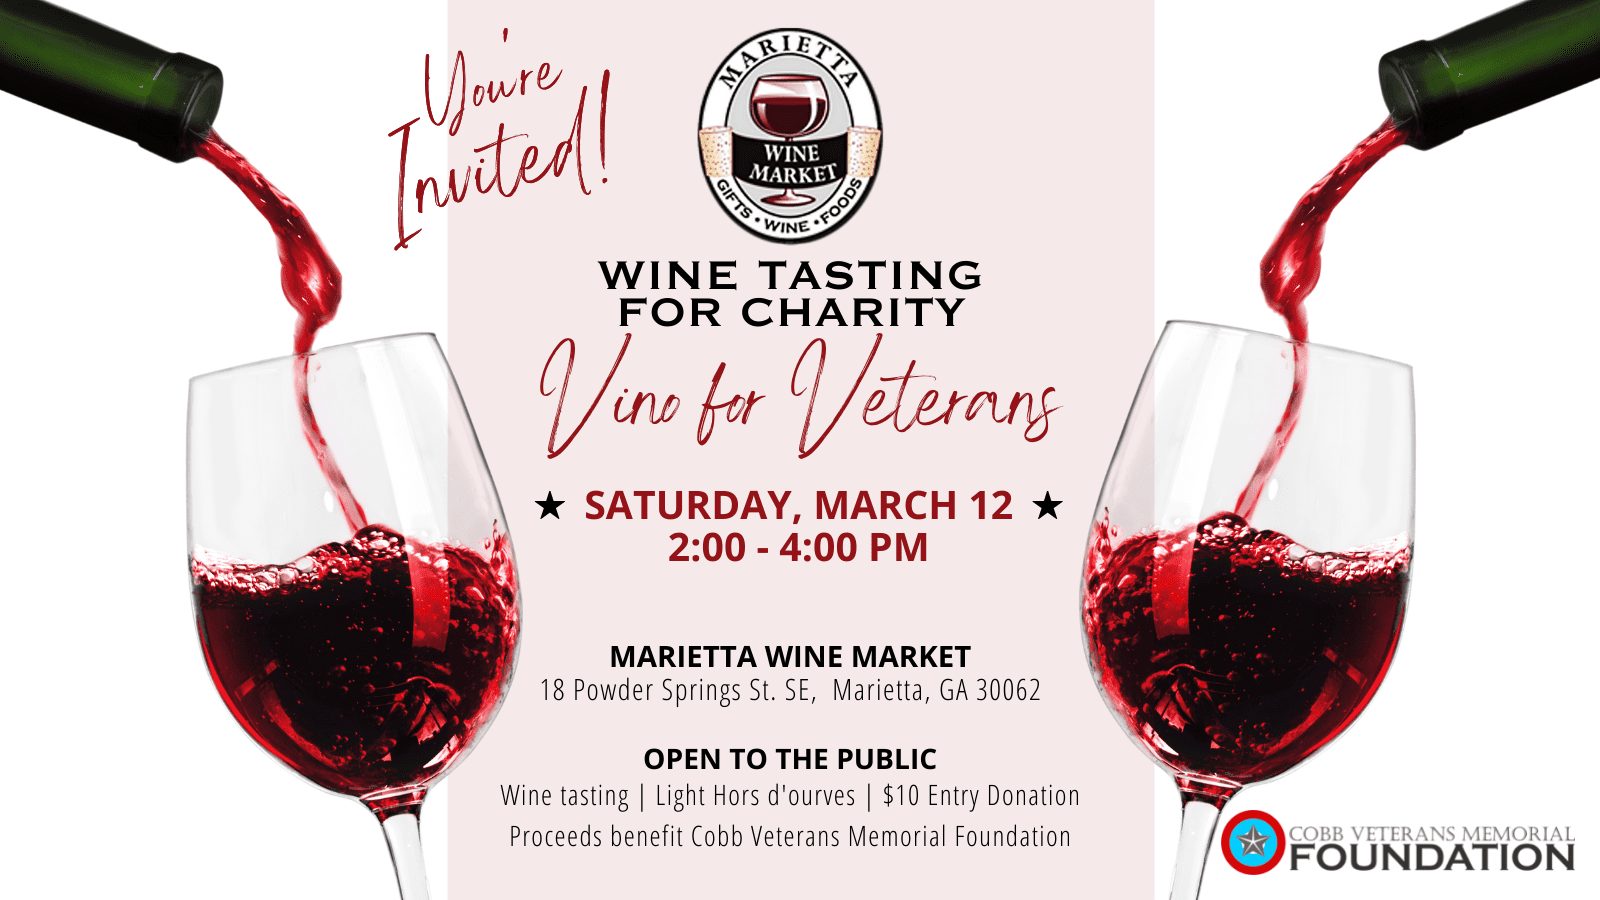 Vino for Veterans Wine Tasting for Charity